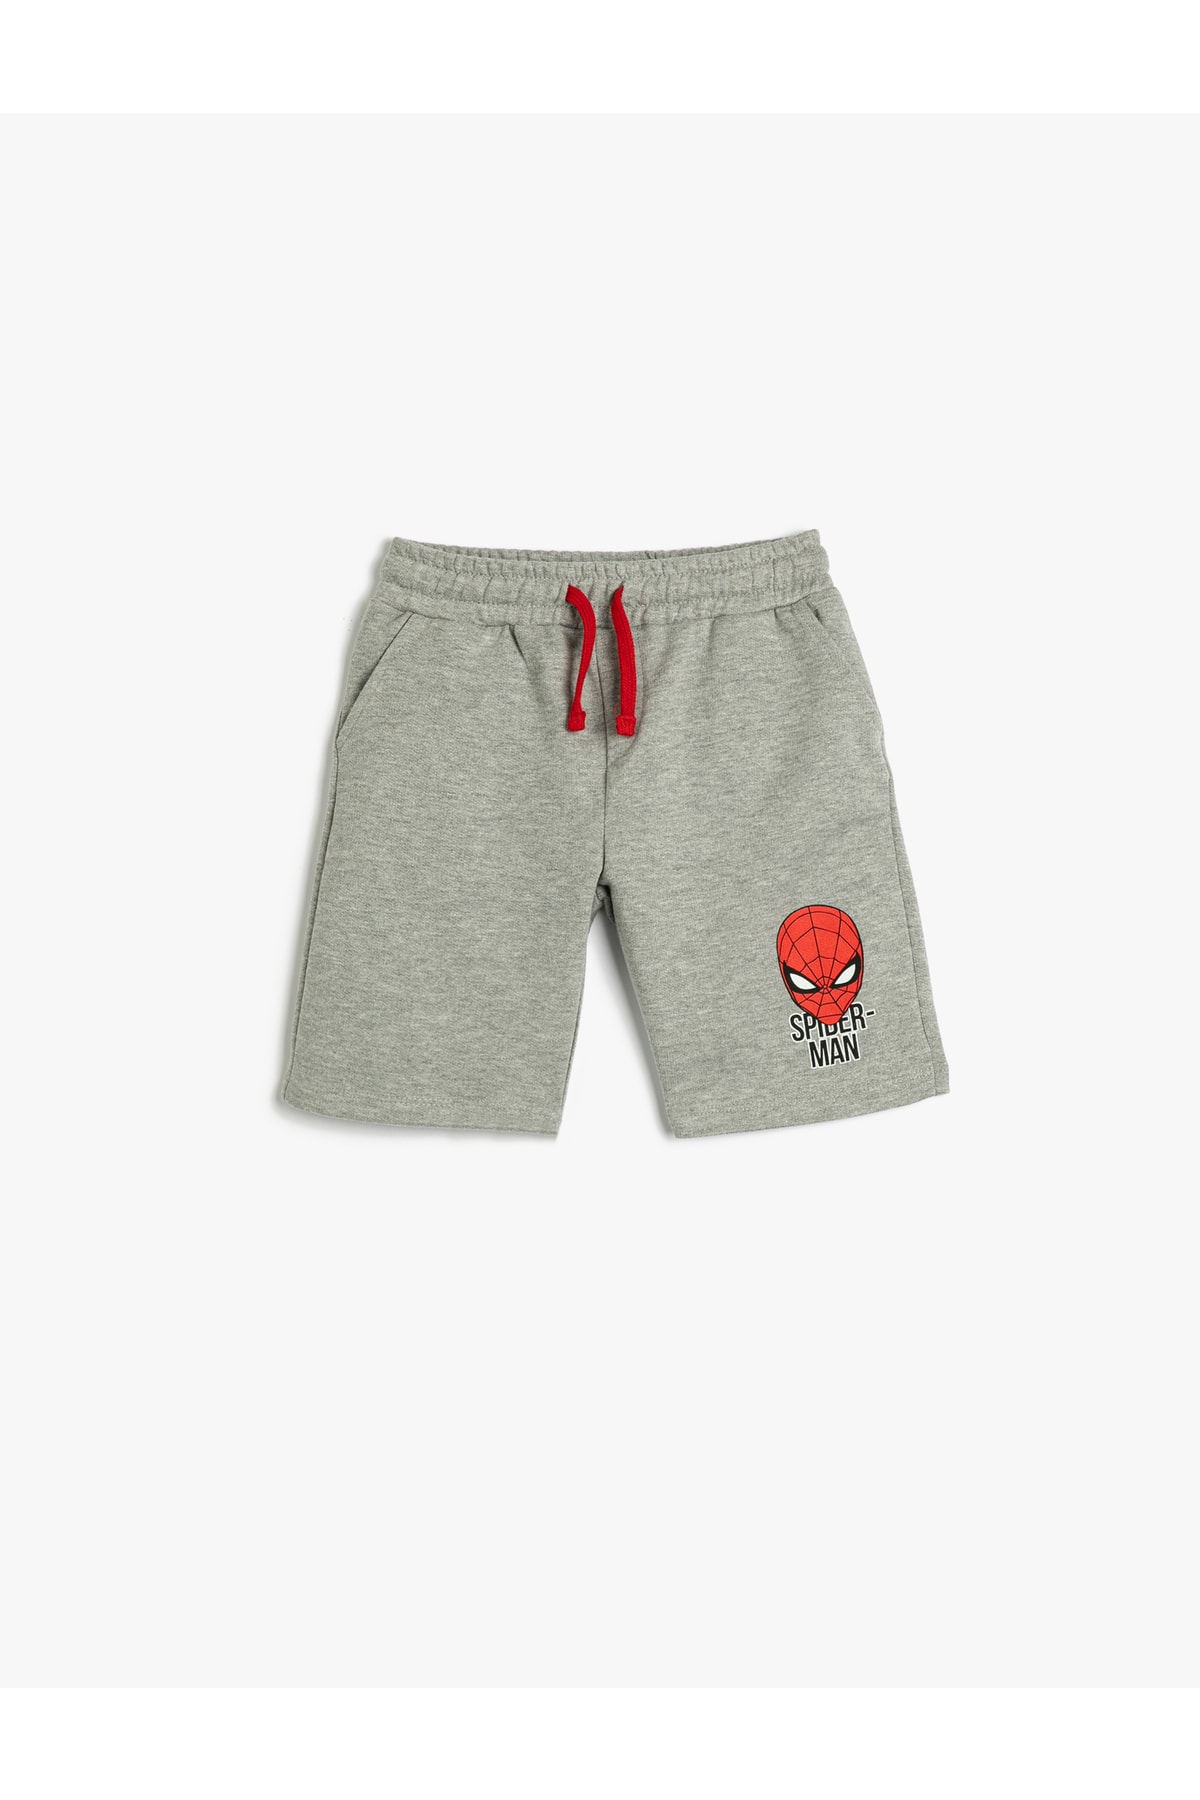 Koton Spider-Man Shorts Licensed Tie Waist Pocket Cotton Cotton